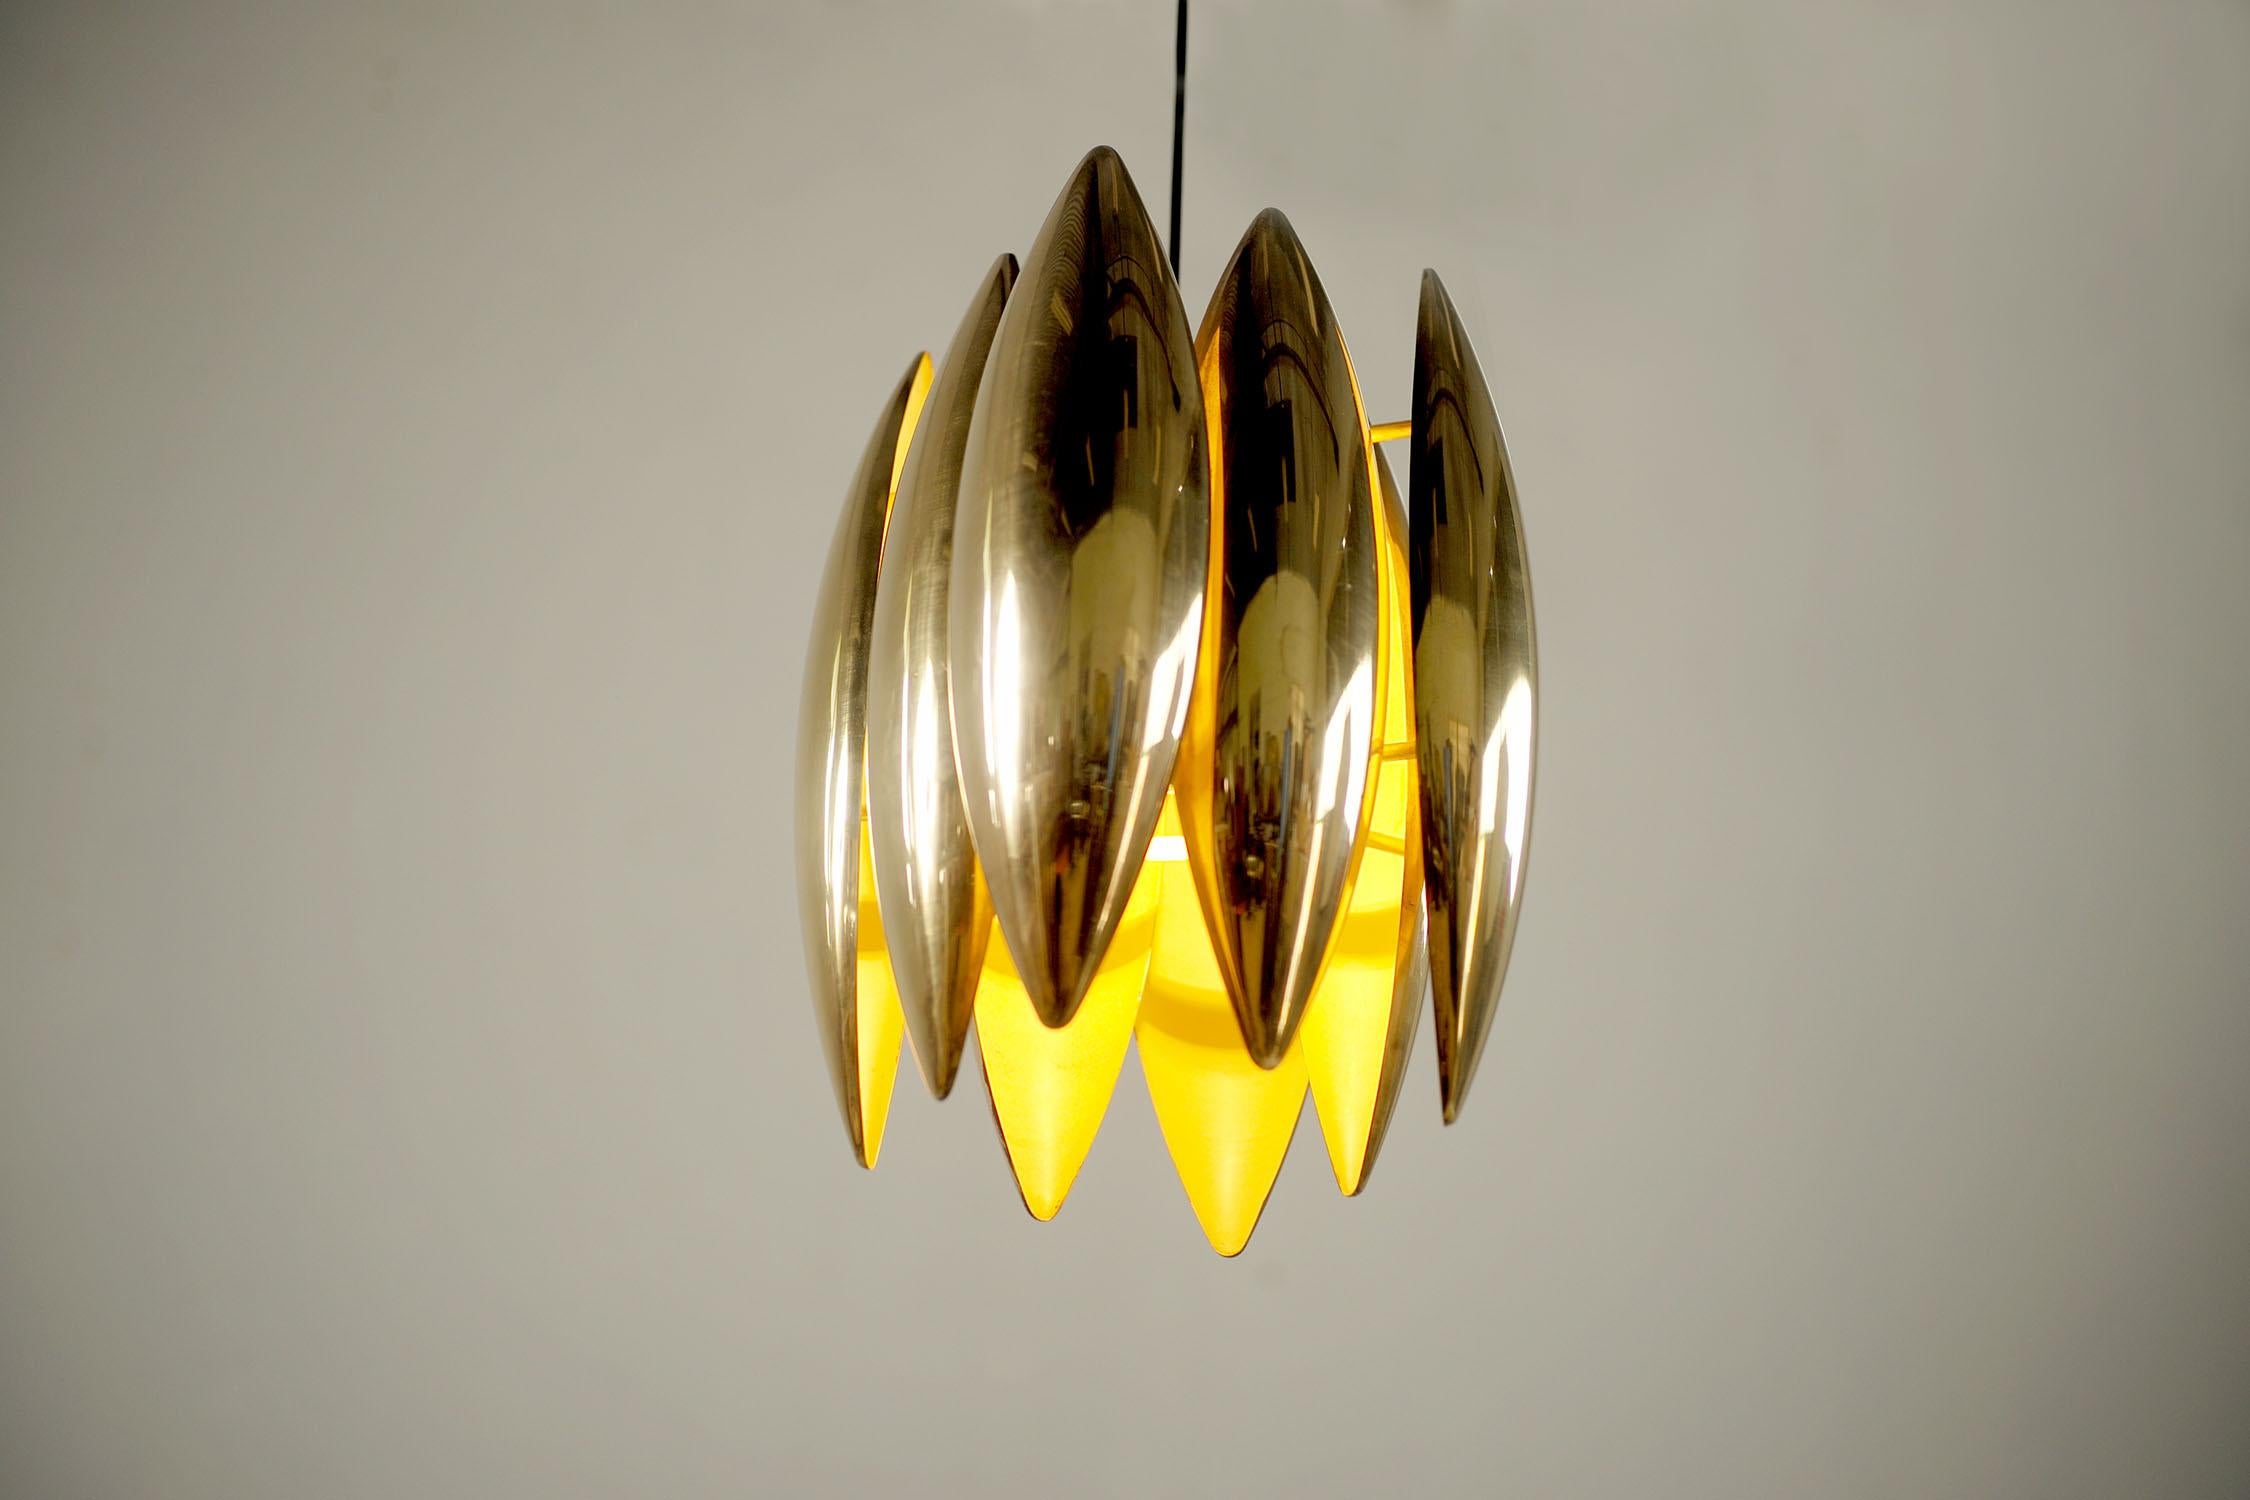 Lampe suspendue Kastor en laiton doré par Jo Hmmerborg pour Fog & Mørup, Danemark 1969. Les 8 réflecteurs sont laqués blanc à l'intérieur, le couvercle de l'anse est en laiton. De très bonne qualité, ce luminaire est l'un des plus emblématiques des